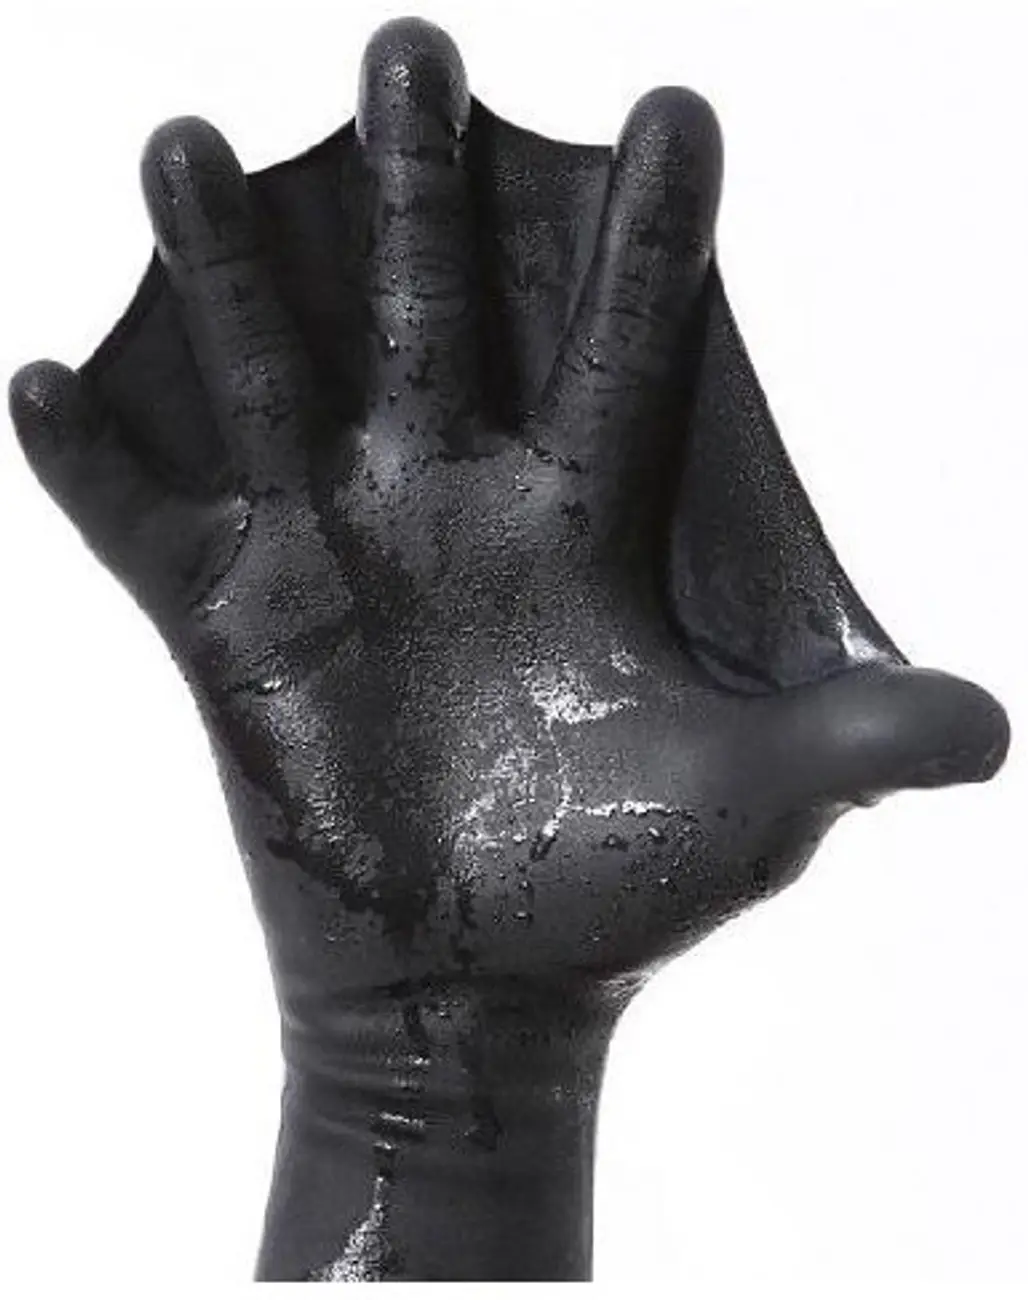 Webbed Power Gloves